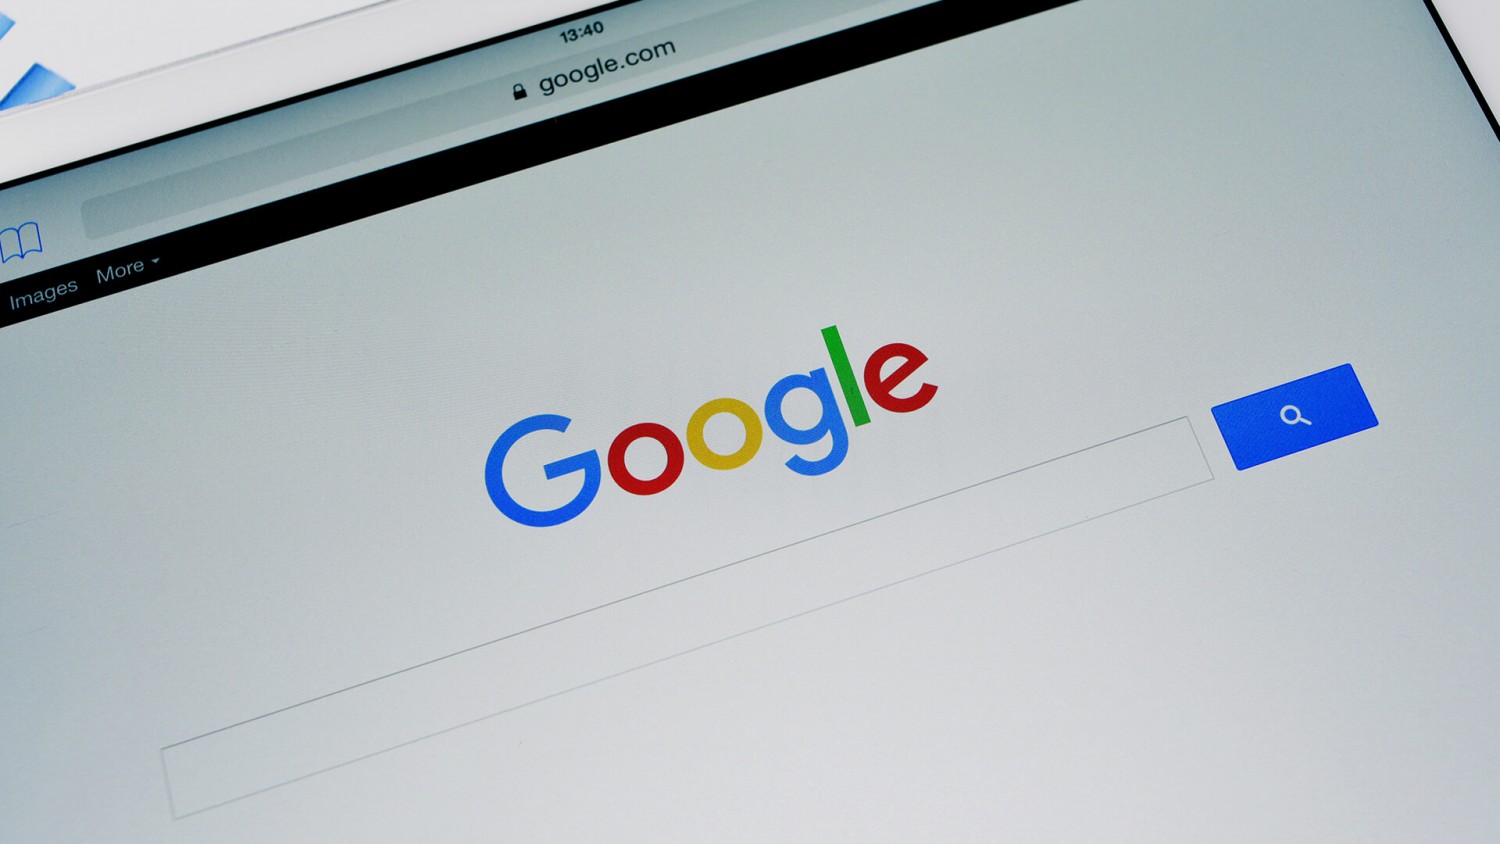 Улучшенный алгоритм естественного поиска Google стал доступен на русском языке